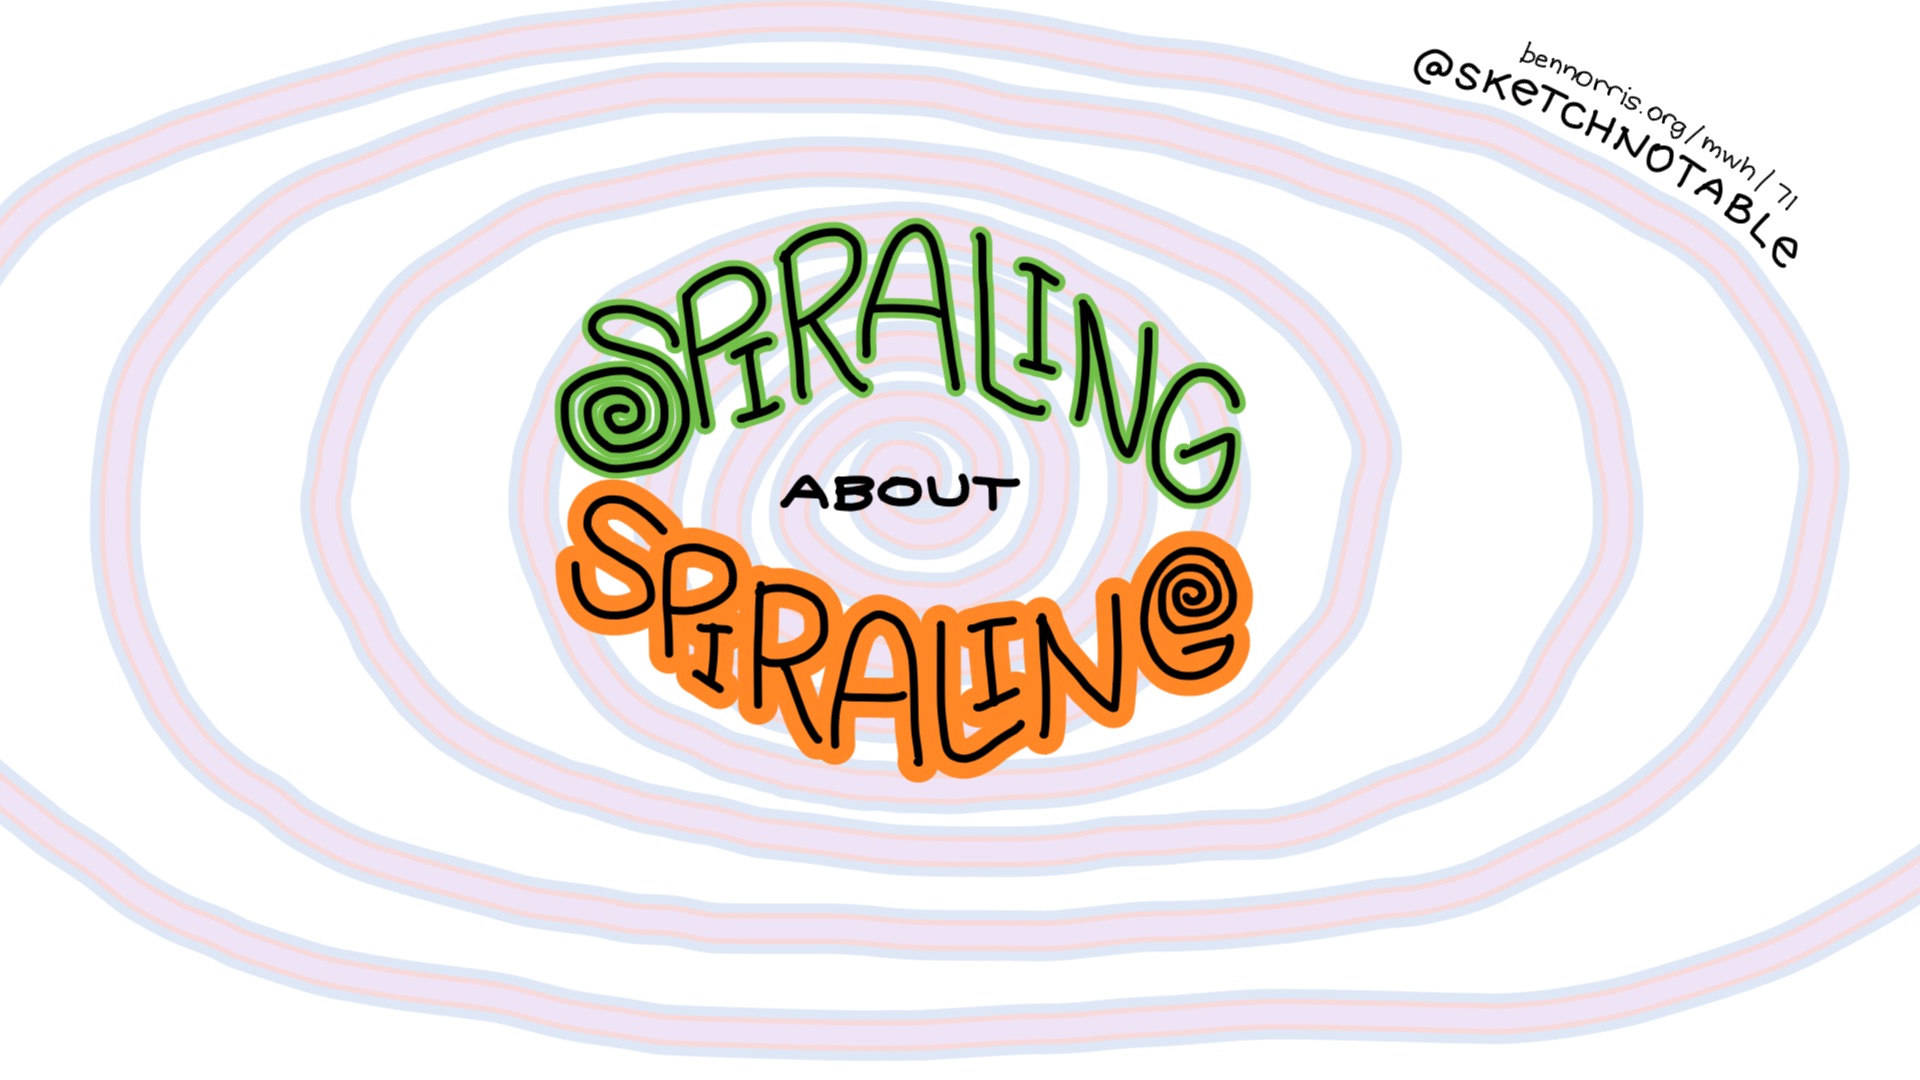 #71: Spiraling about spiraling